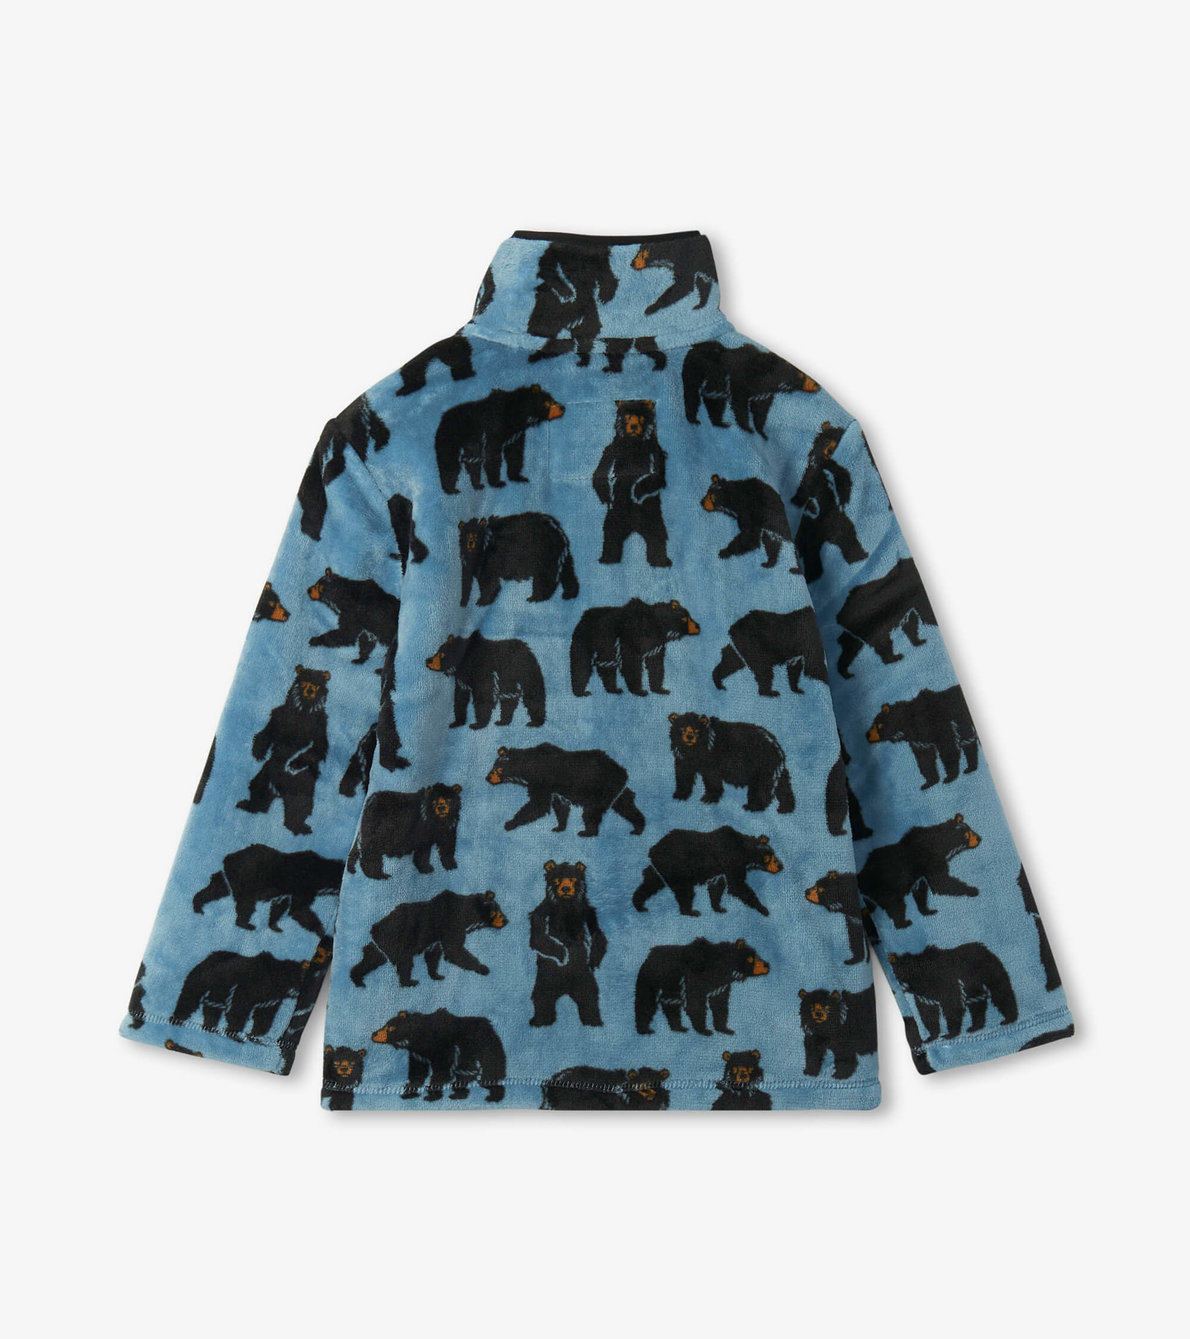 View larger image of Wild Bears Fuzzy Fleece Zip Up